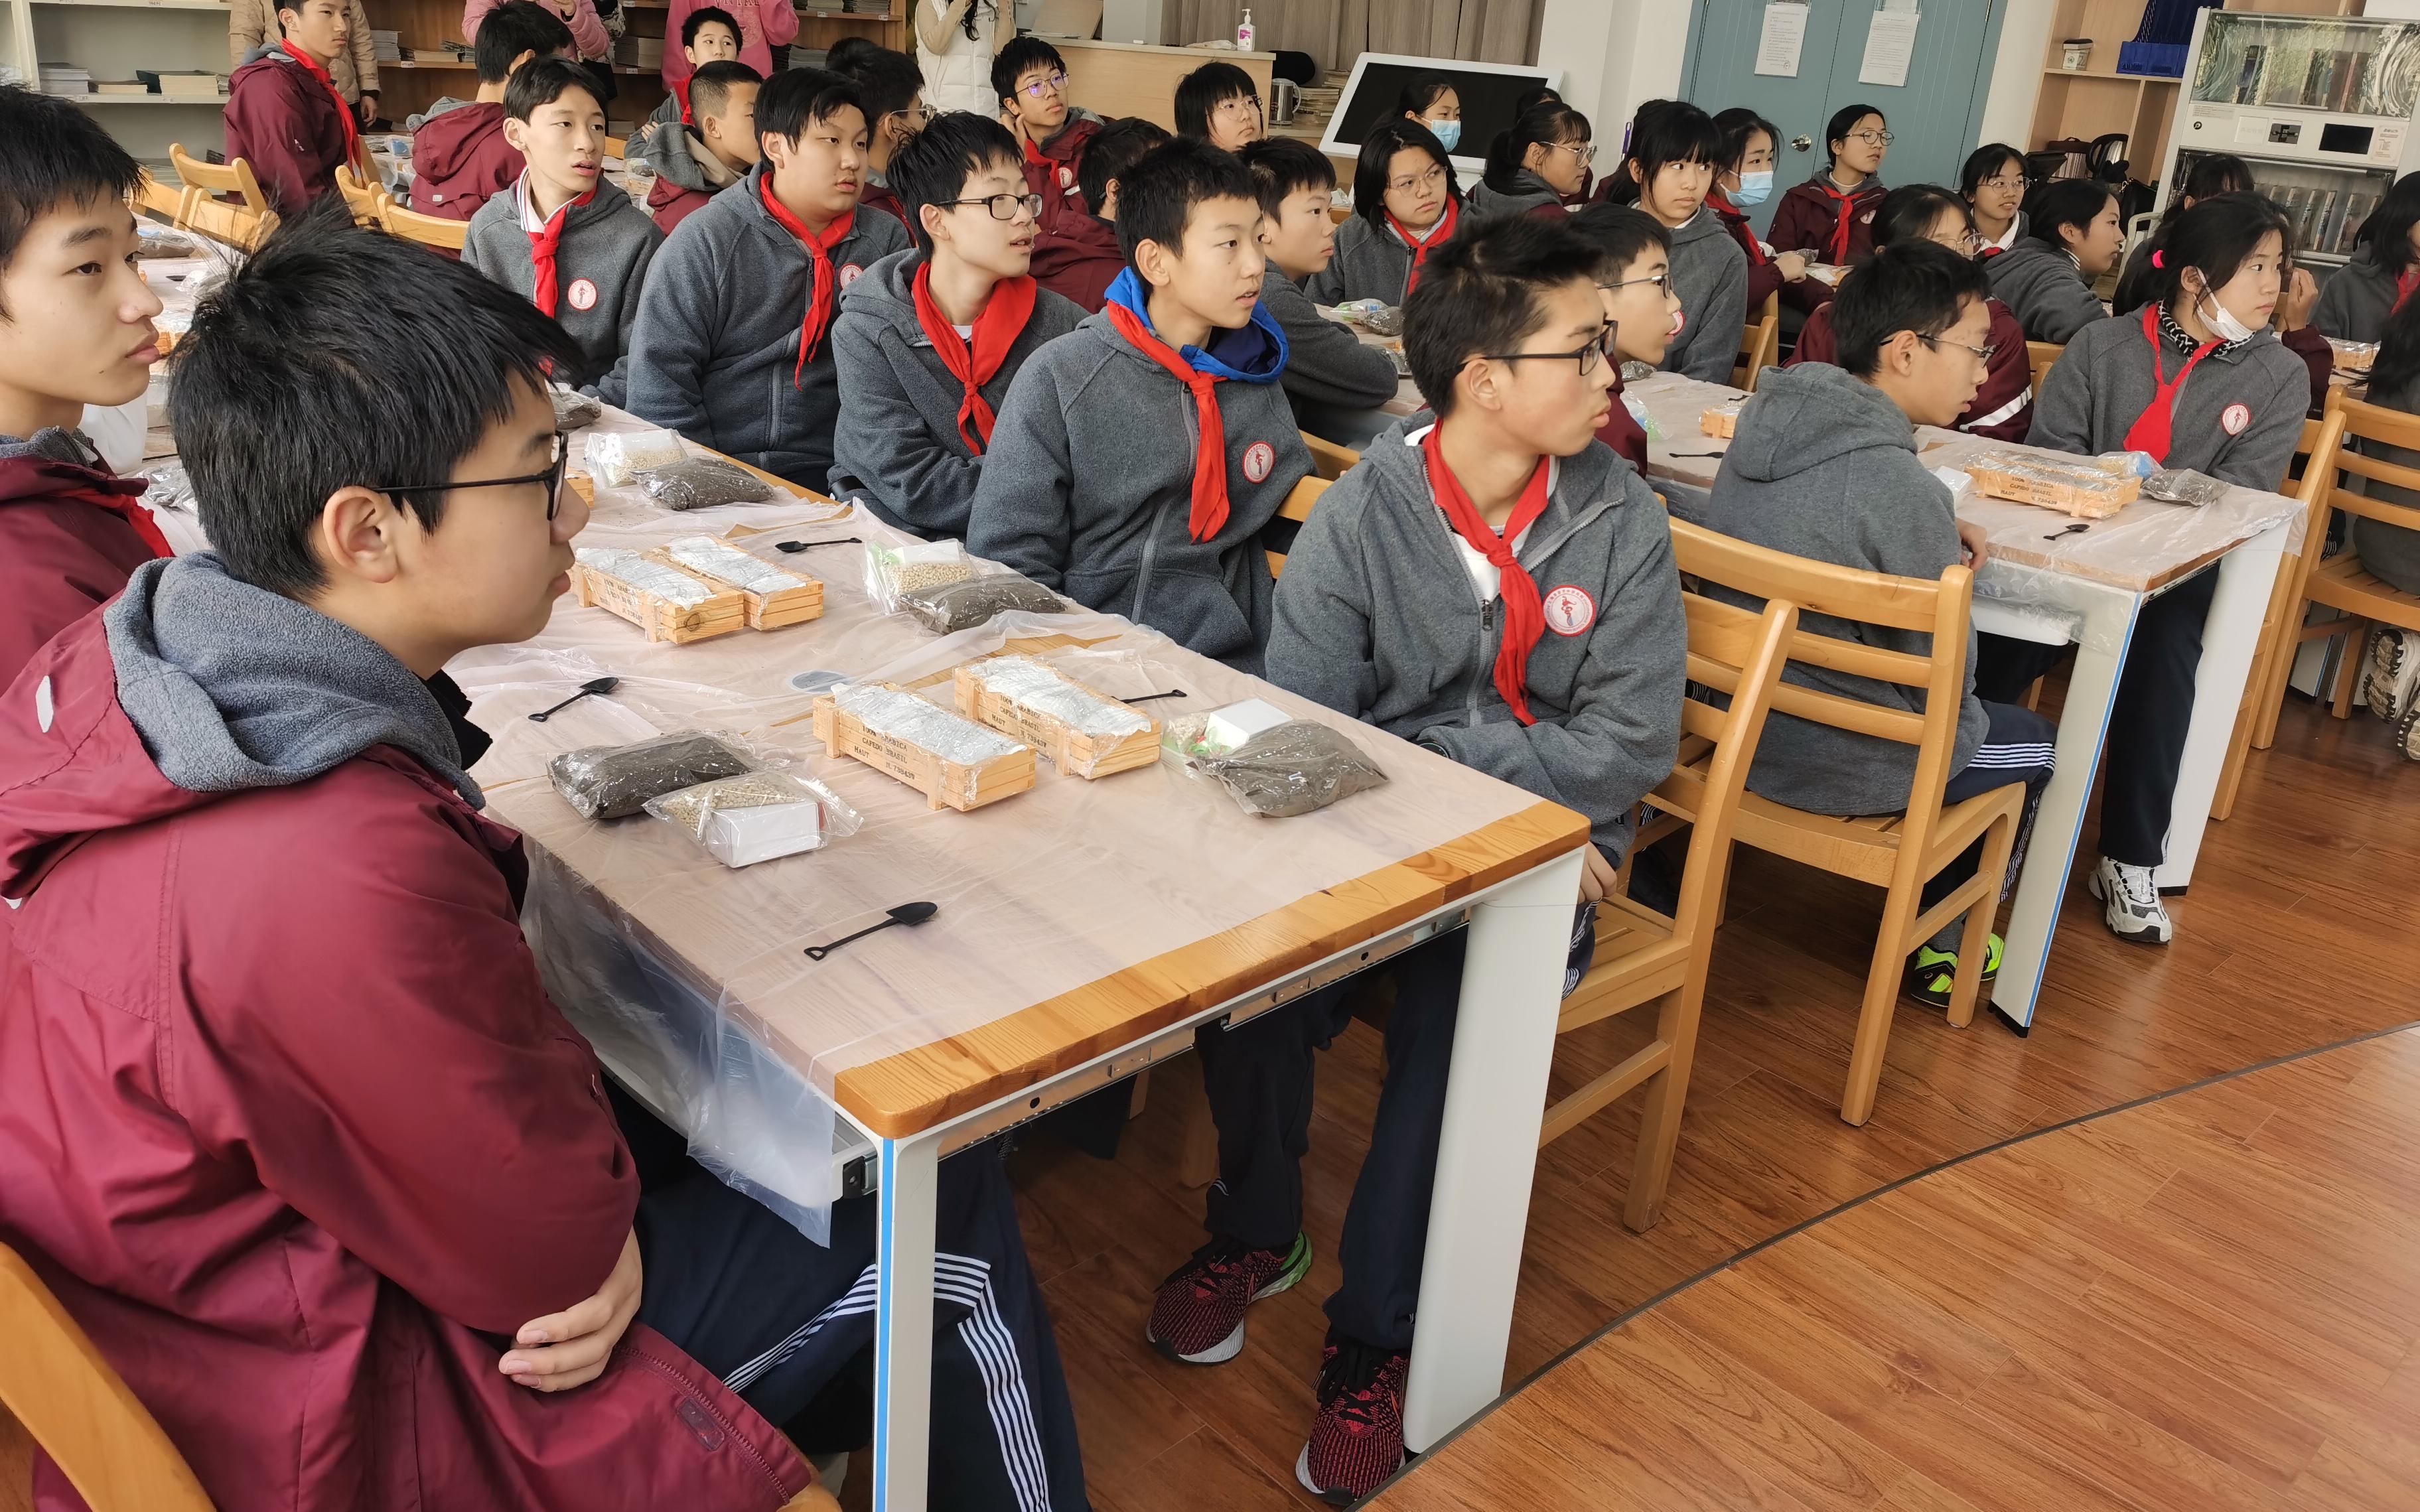 看指尖的多肉世界上海市环境学校生态工程专业部赴进才中学北校开展